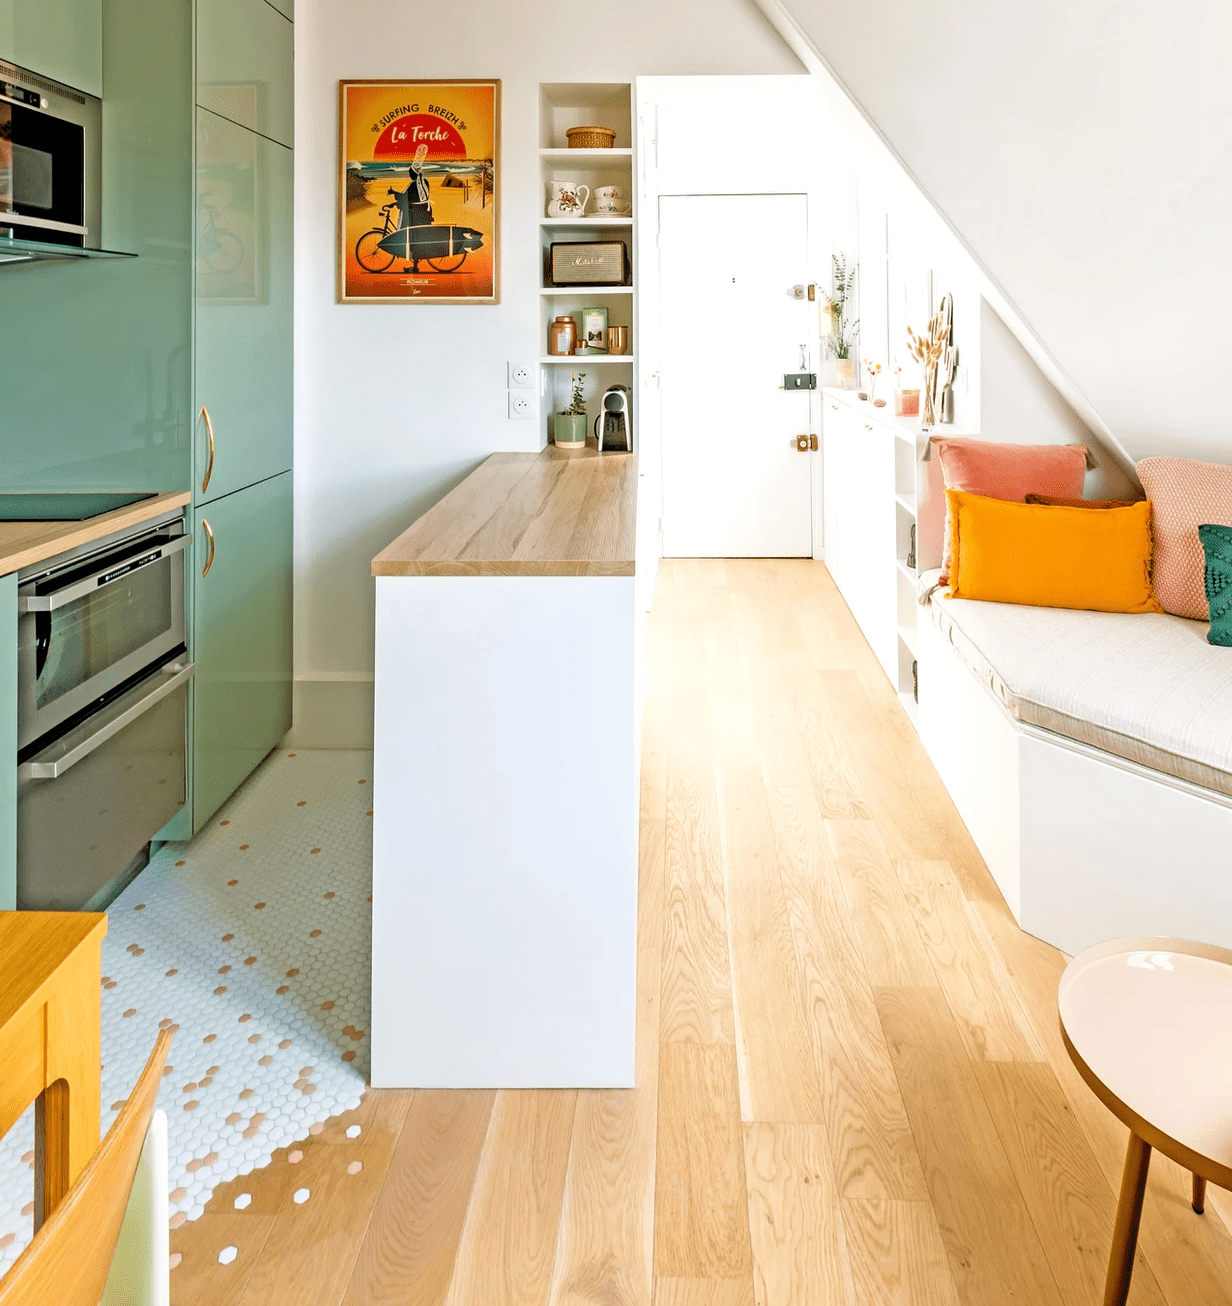 ideias de azulejos para piso de cozinha